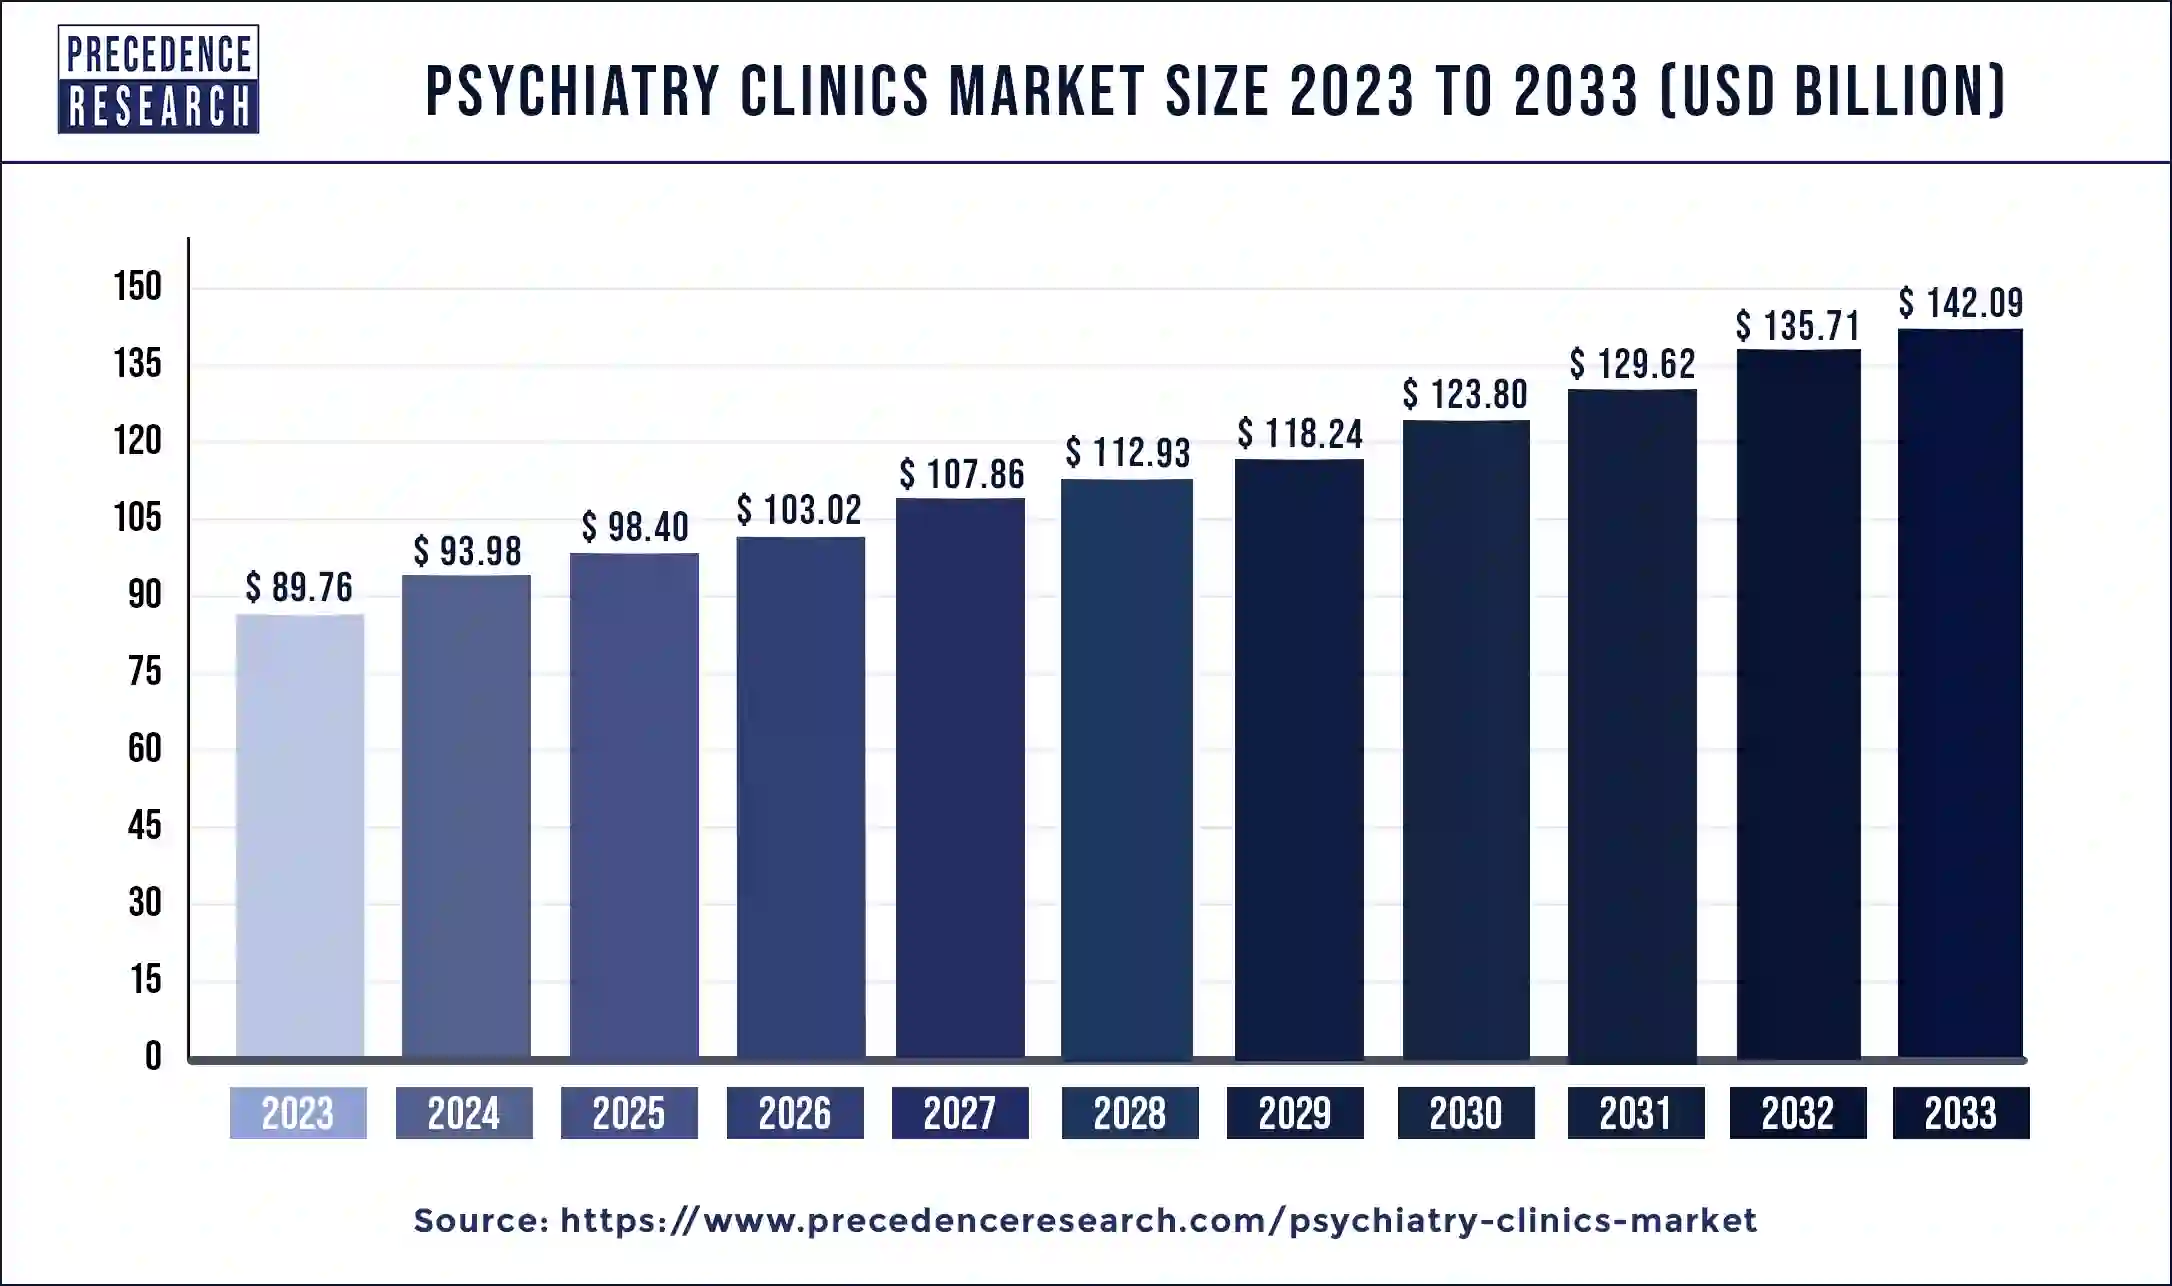 Psychiatry Clinics Market Size 2023 to 2033